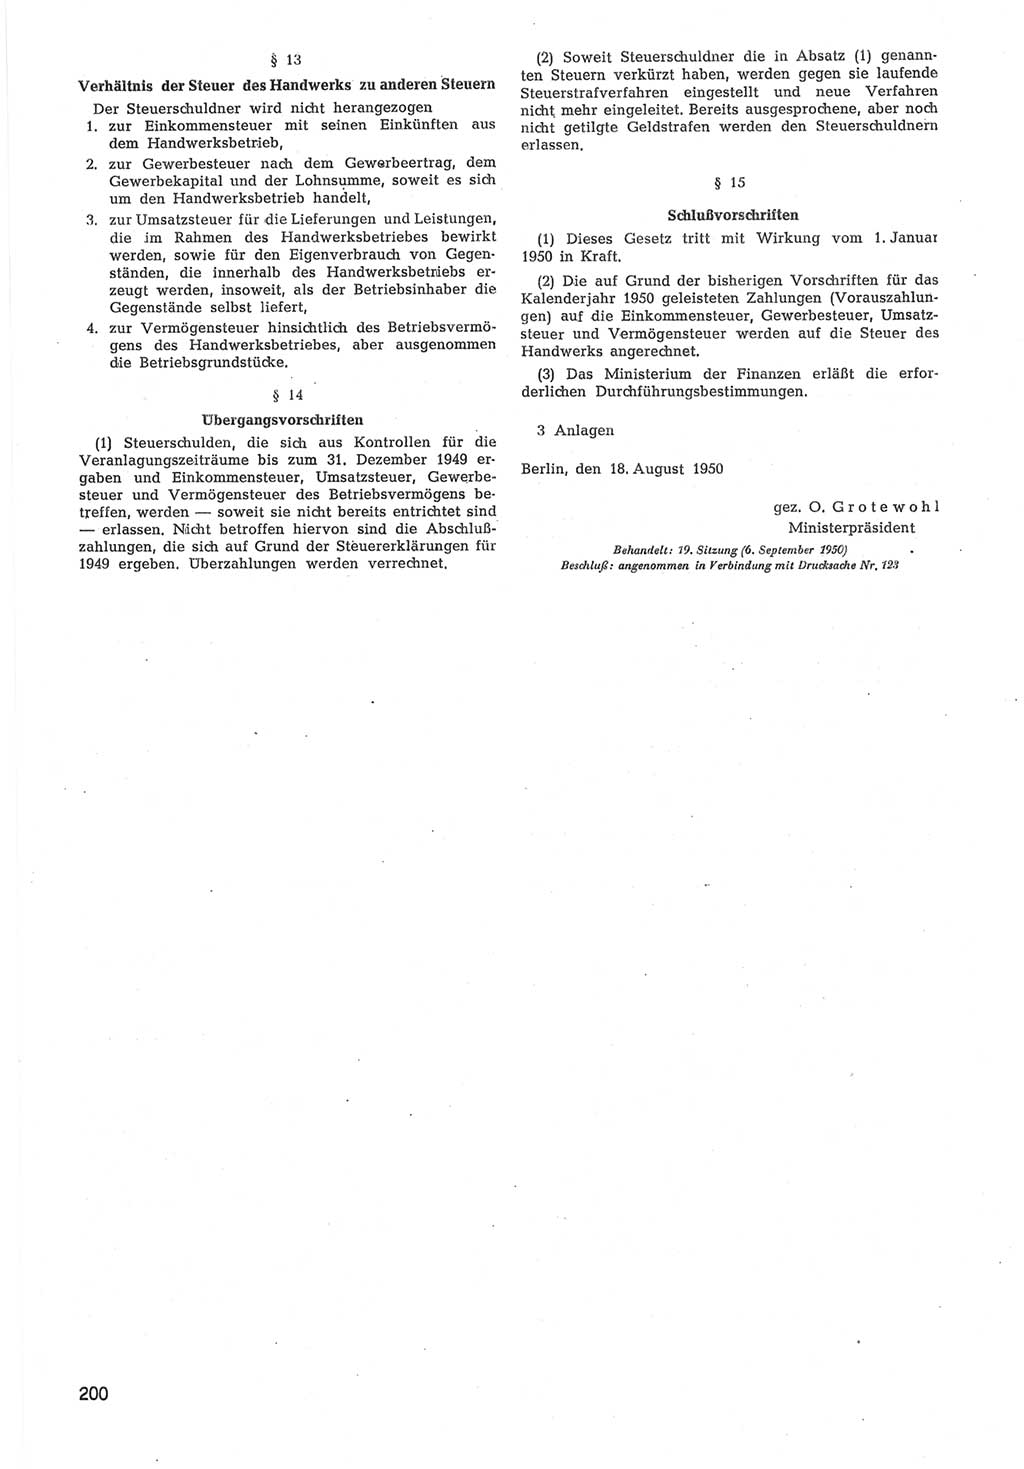 Provisorische Volkskammer (VK) der Deutschen Demokratischen Republik (DDR) 1949-1950, Dokument 802 (Prov. VK DDR 1949-1950, Dok. 802)